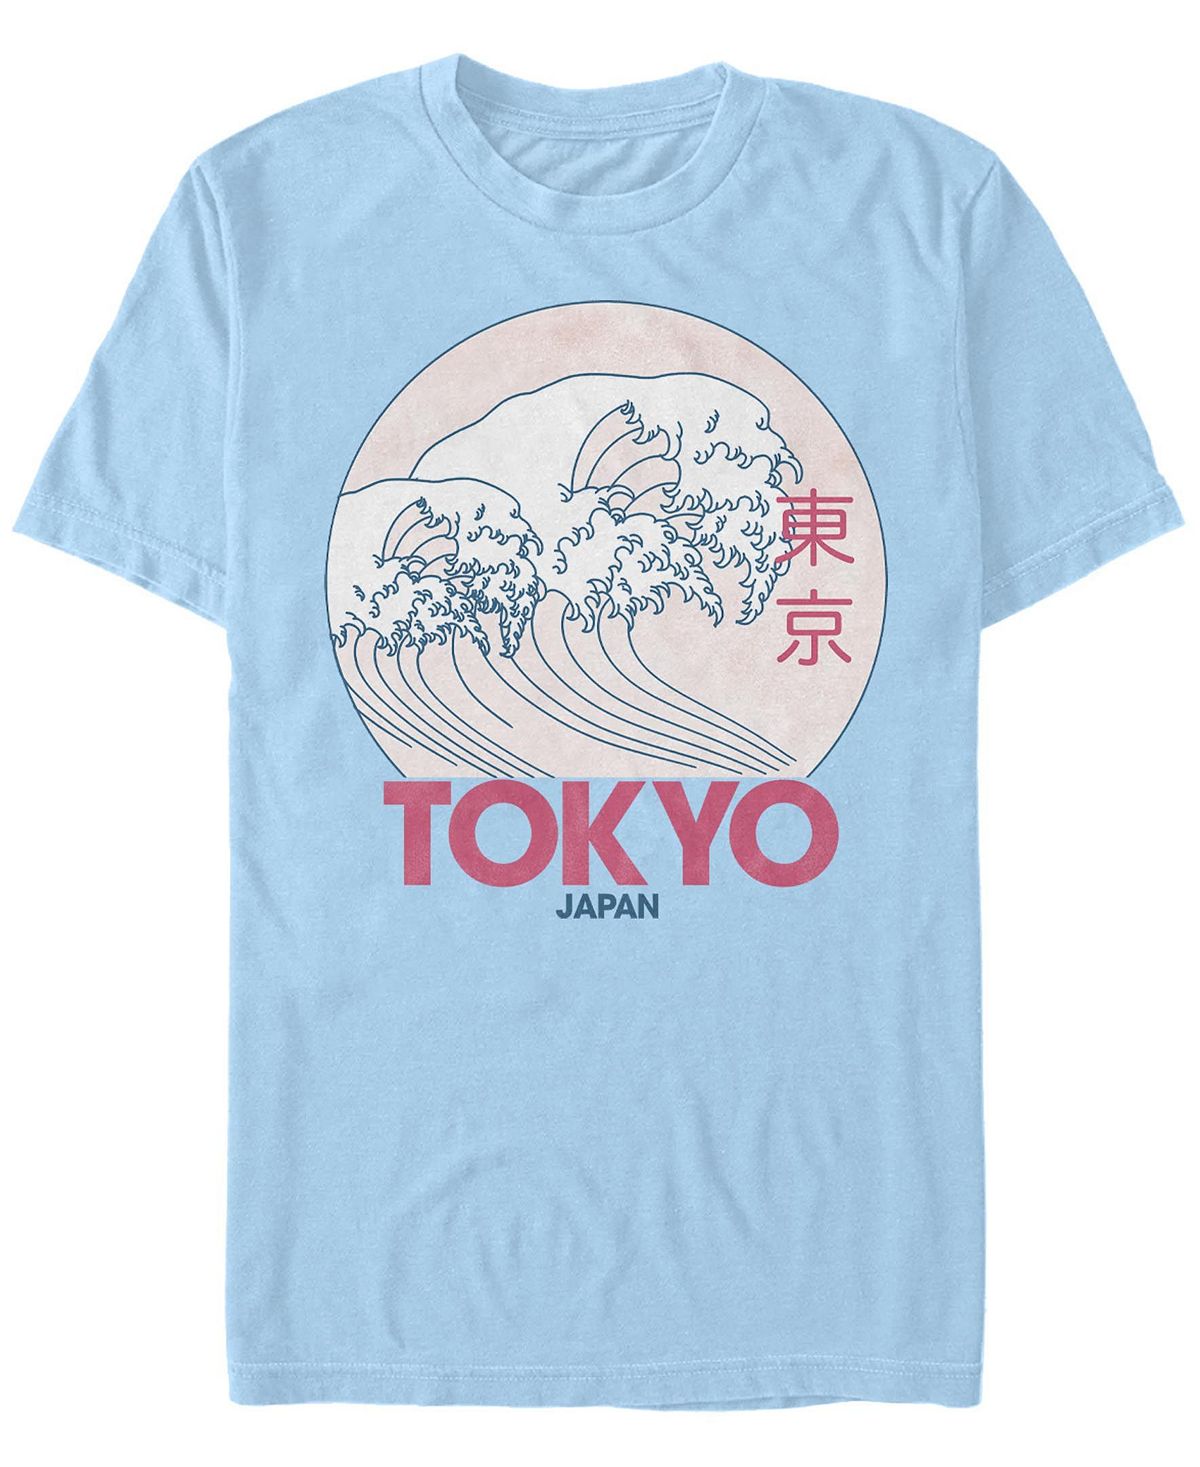 Мужская футболка с круглым вырезом с короткими рукавами в винтажном стиле tokyo Fifth Sun, светло-синий мужская футболка с круглым вырезом и короткими рукавами в винтажном стиле с логотипом гарри поттера fifth sun мульти